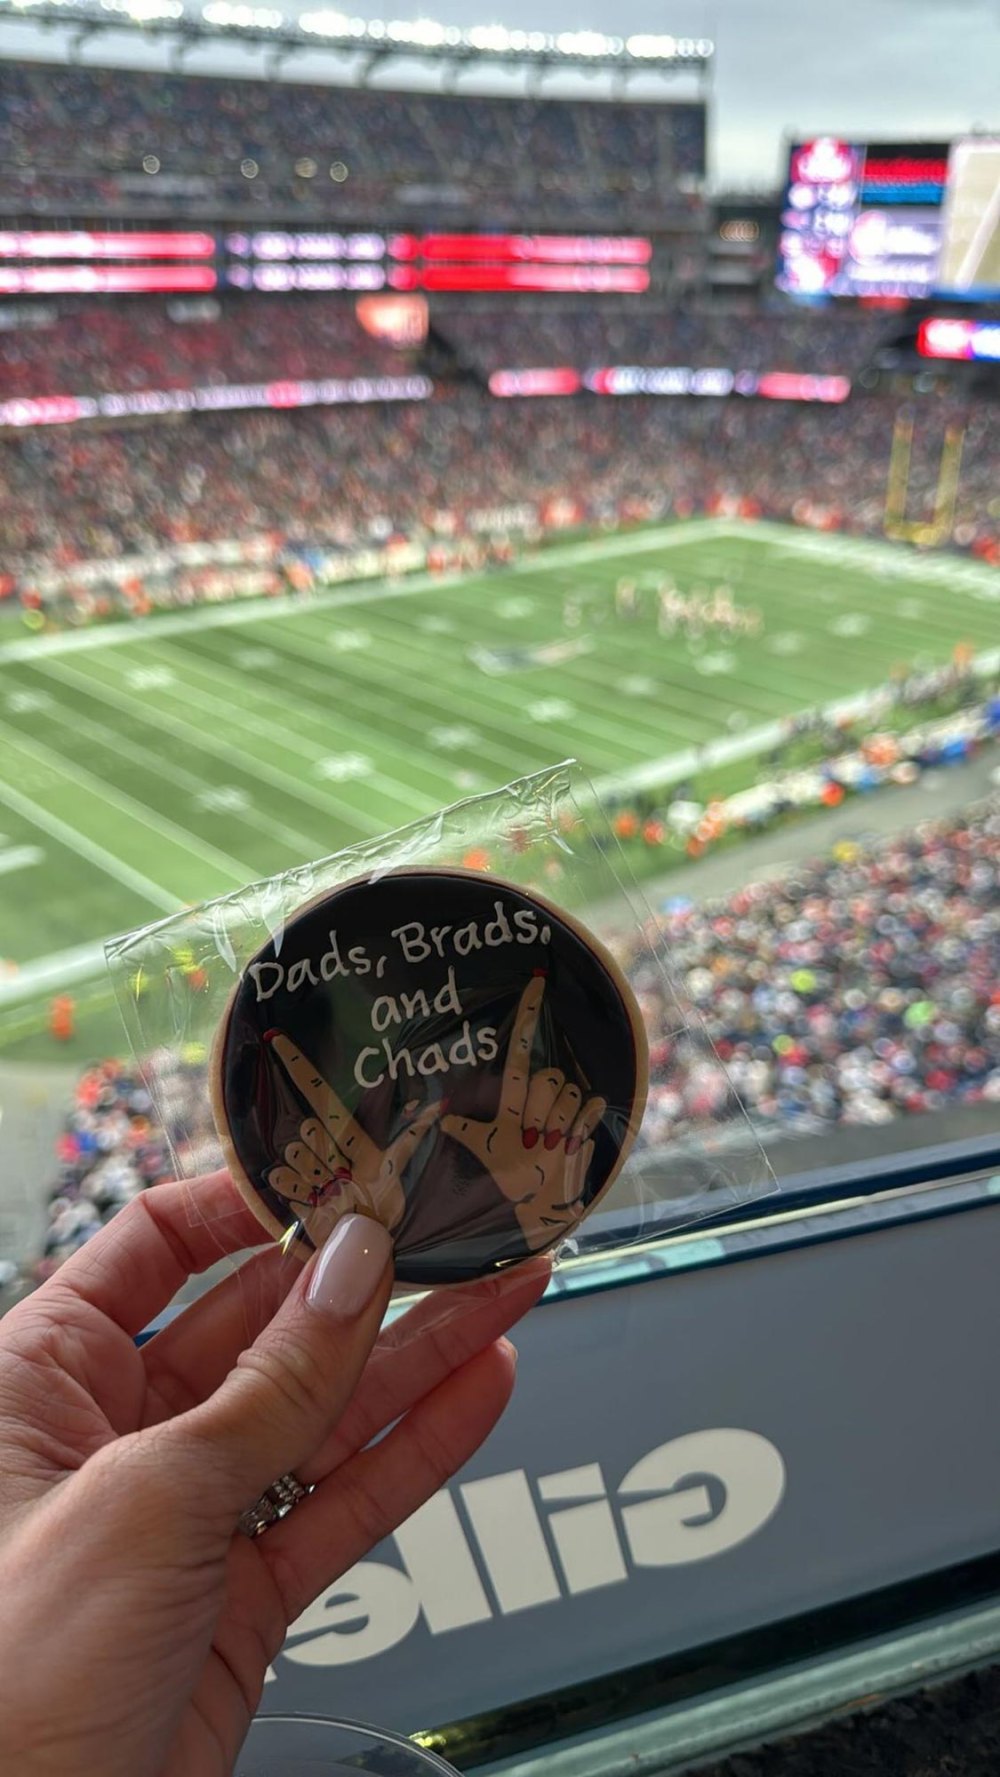 Brittany Mahomes schenkte ihren Vätern Brads und Chads Cookie, als sie mit Taylor Swift das Spiel der Chiefs besuchte